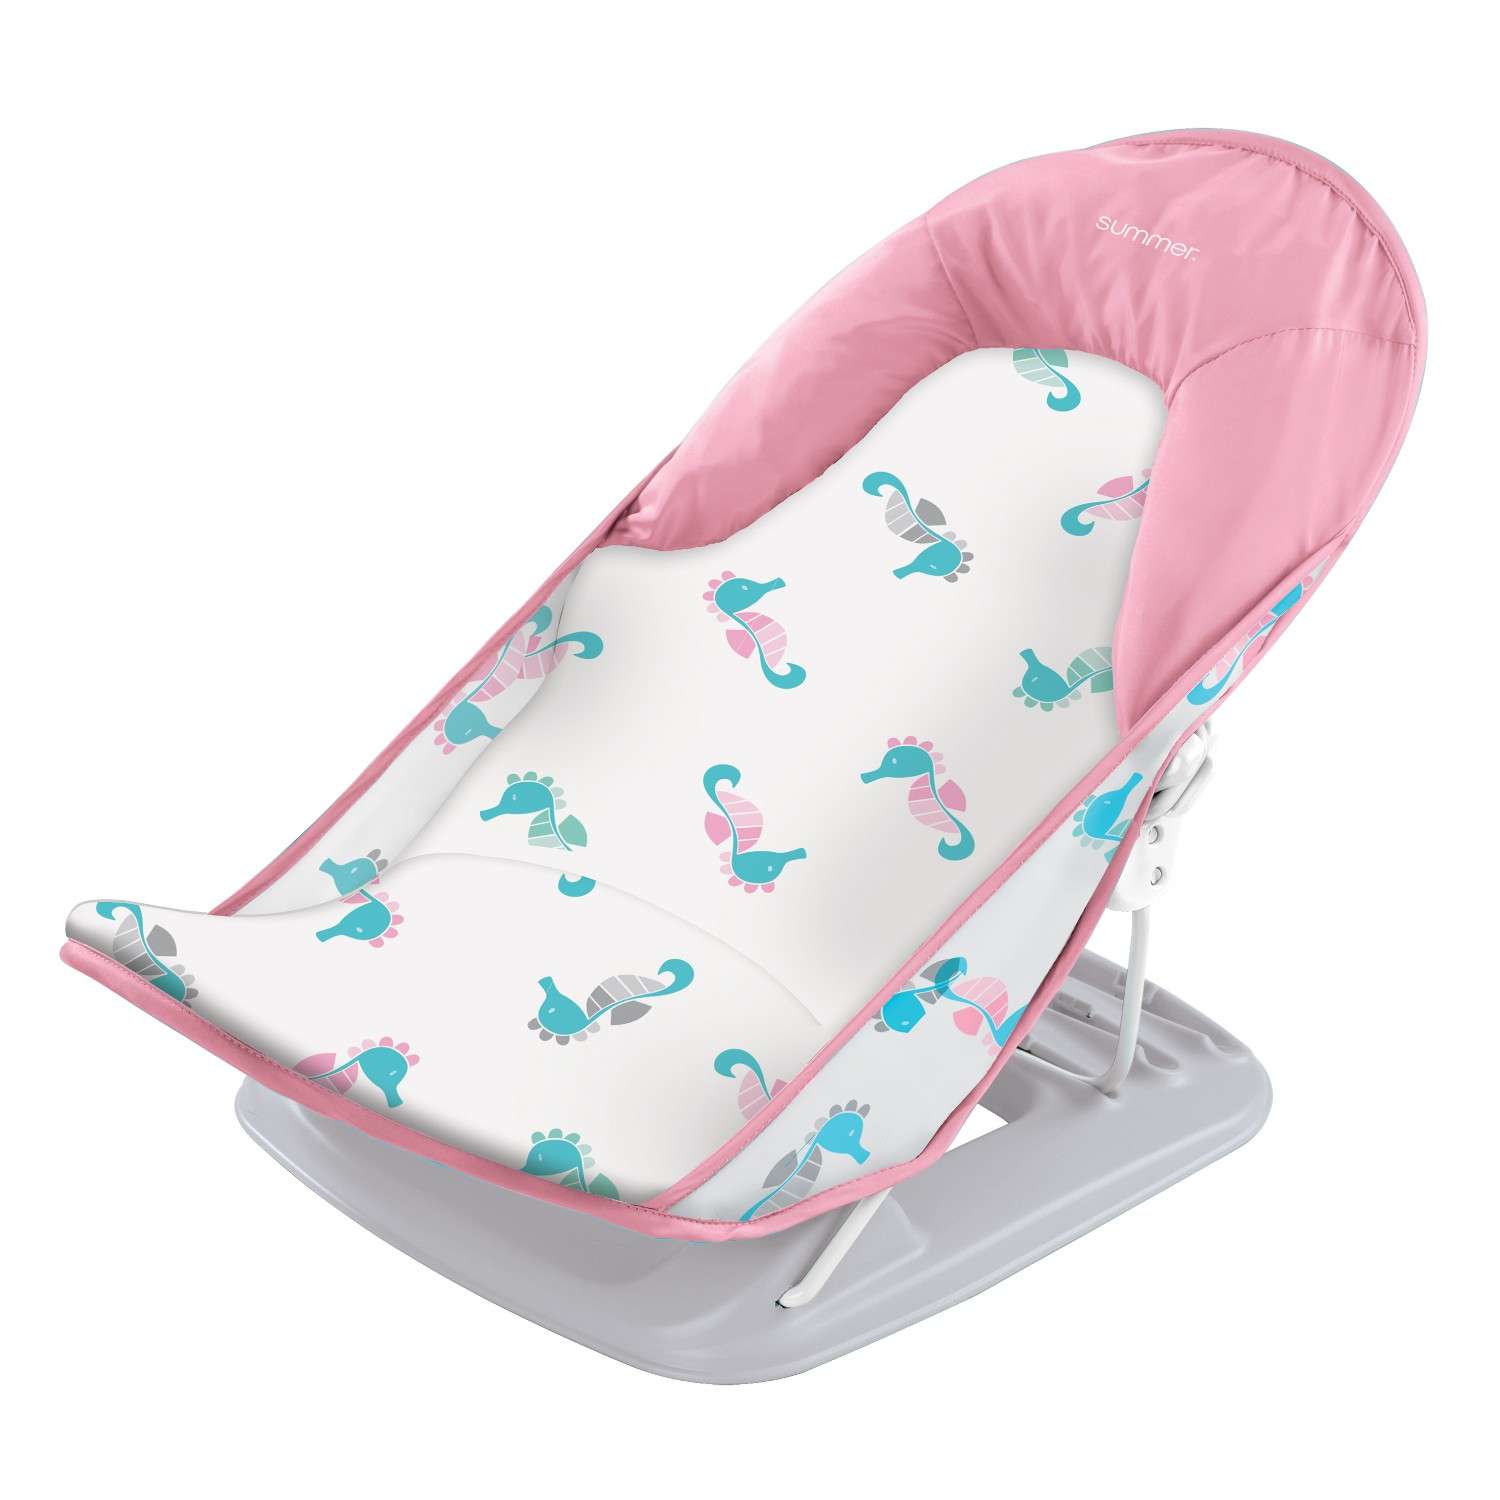 Лежак для купания Summer Infant с подголовником Deluxe Baby Bather морские коньки/розовый - фото 1